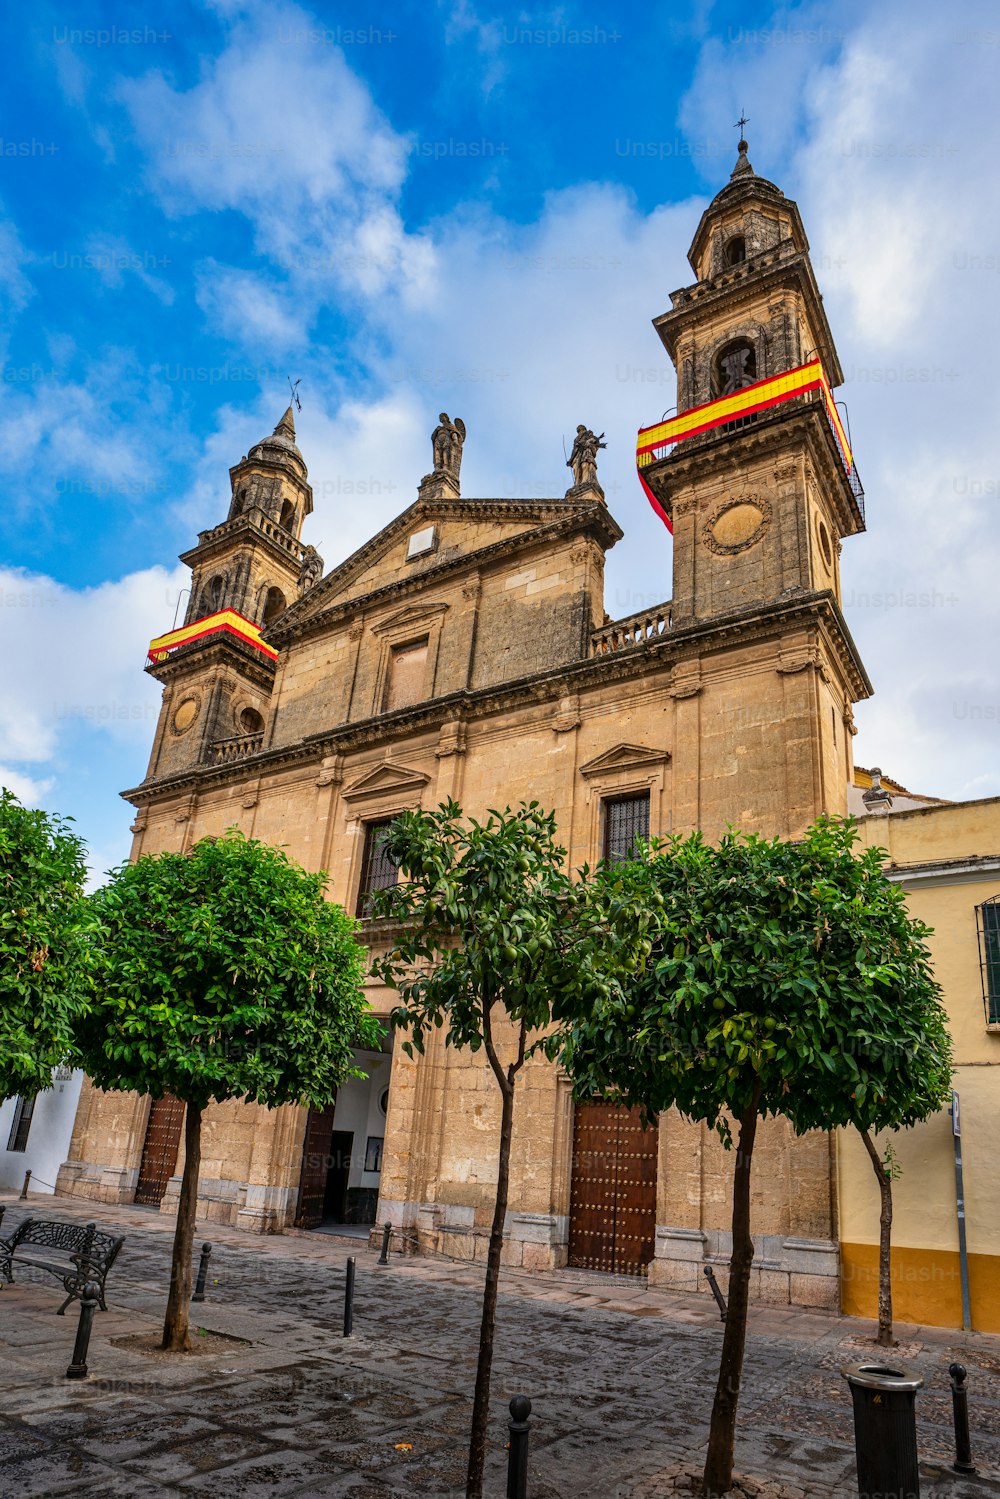 スペイン、アンダルシア州コルドバのジュラメントデサンラファエル教会。